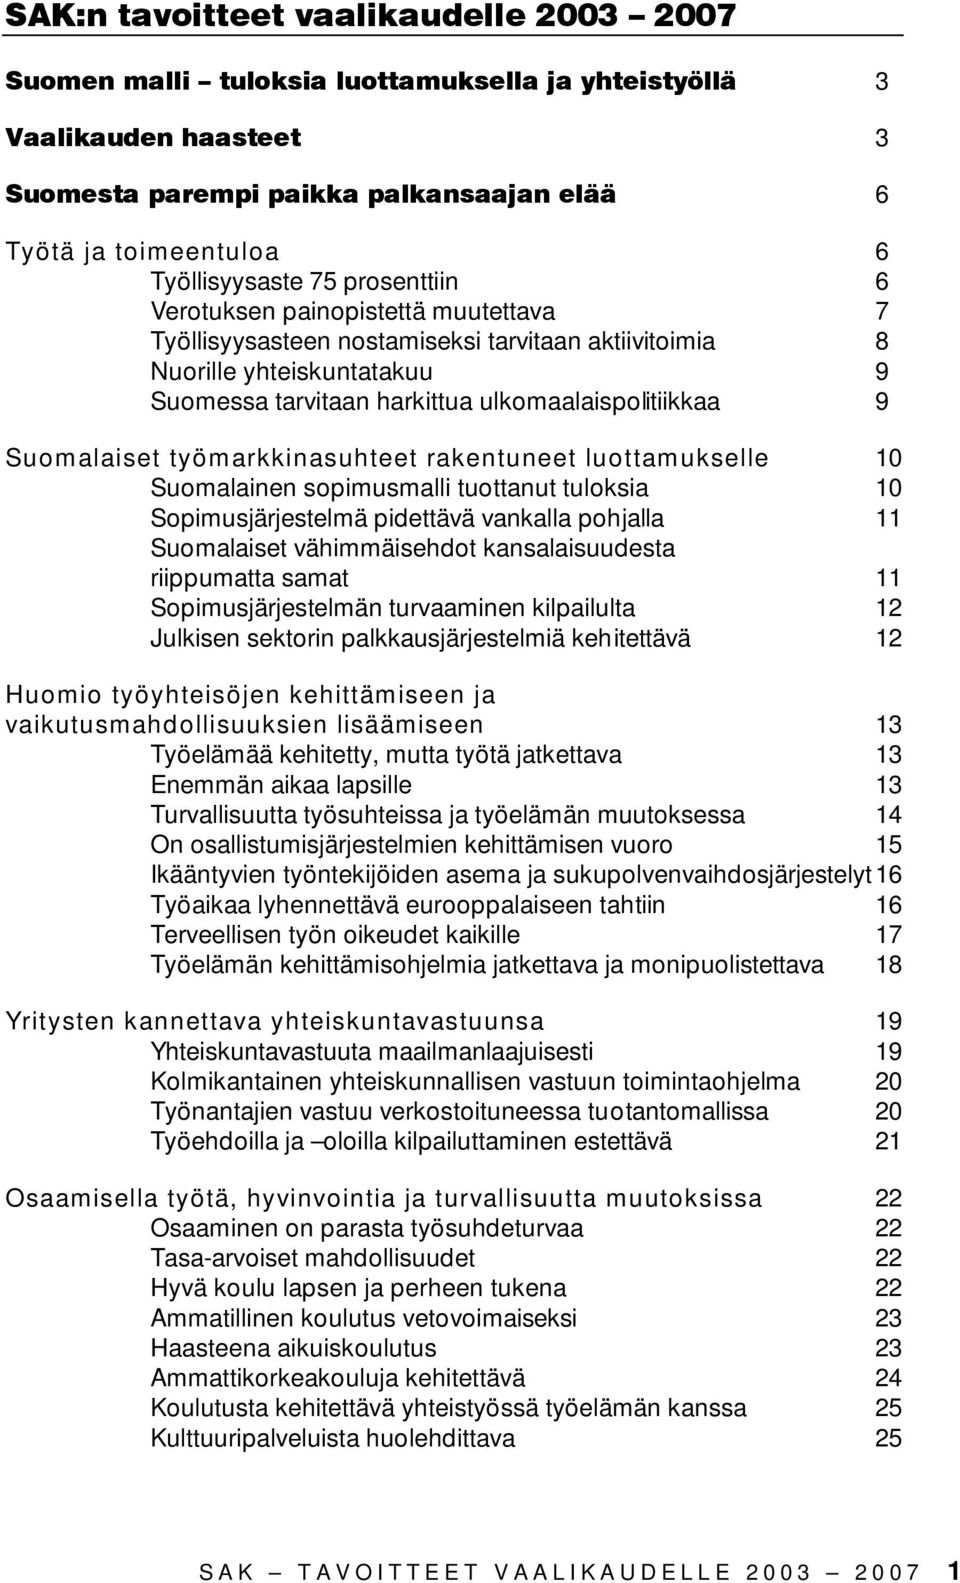 ulkomaalaispolitiikkaa 9 Suomalaiset työmarkkinasuhteet rakentuneet luottamukselle 10 Suomalainen sopimusmalli tuottanut tuloksia 10 Sopimusjärjestelmä pidettävä vankalla pohjalla 11 Suomalaiset